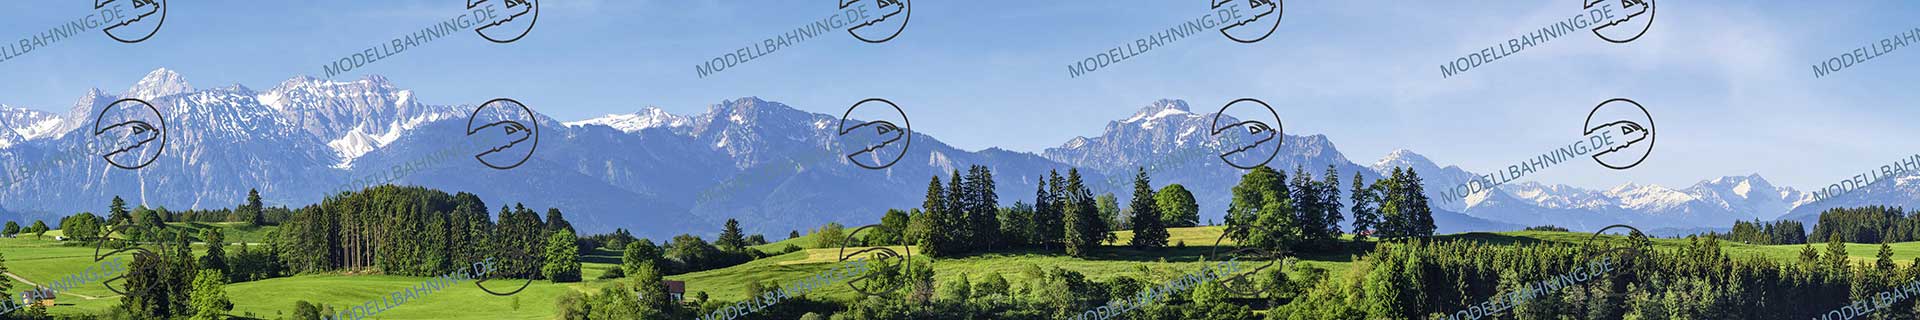 Bayern mit Alpenbergen Teil 2 – Modellbahn Hintergrund 300 cm 1